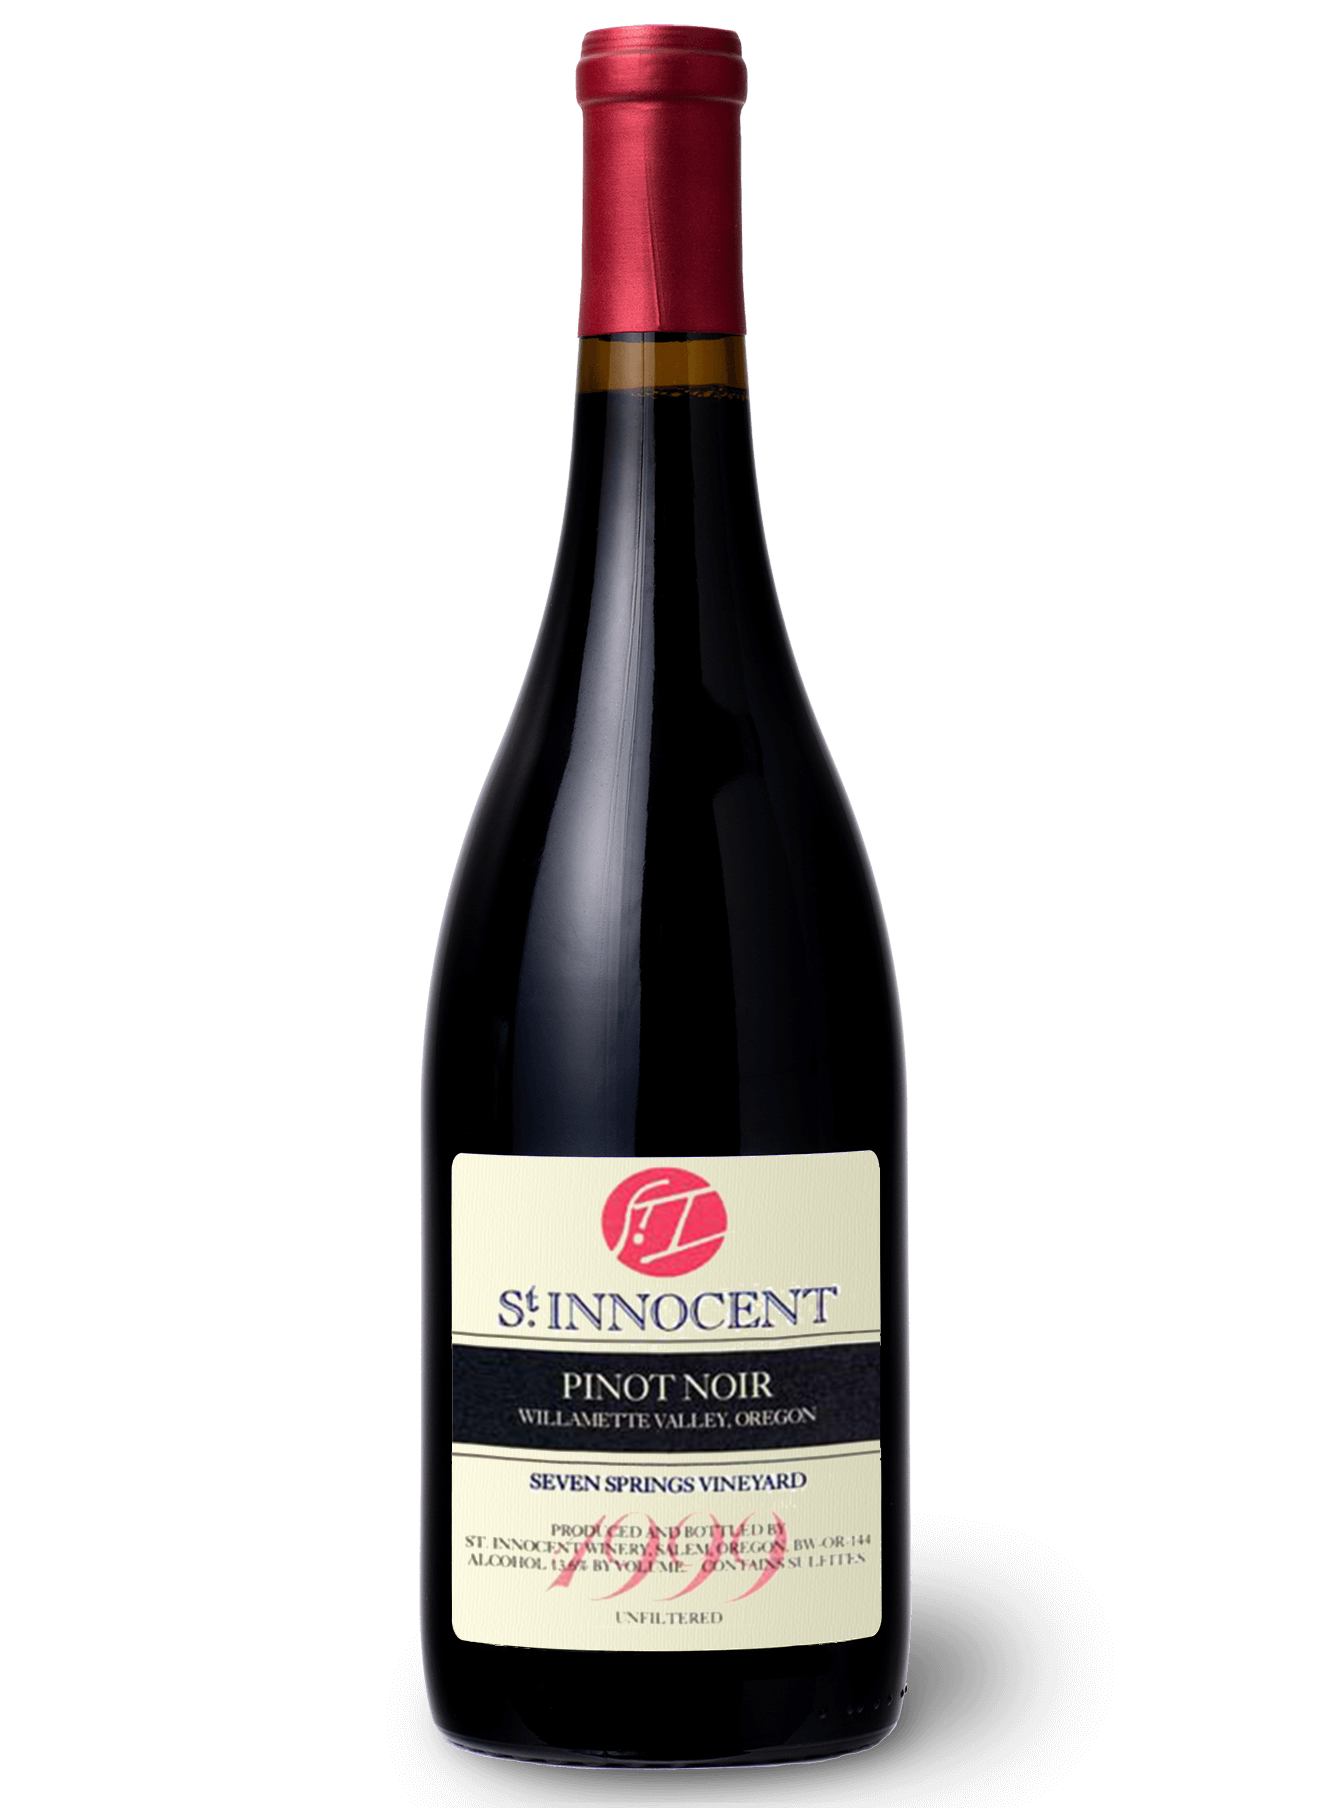 Bottle of 1999 St. Innocent Pinot Noir